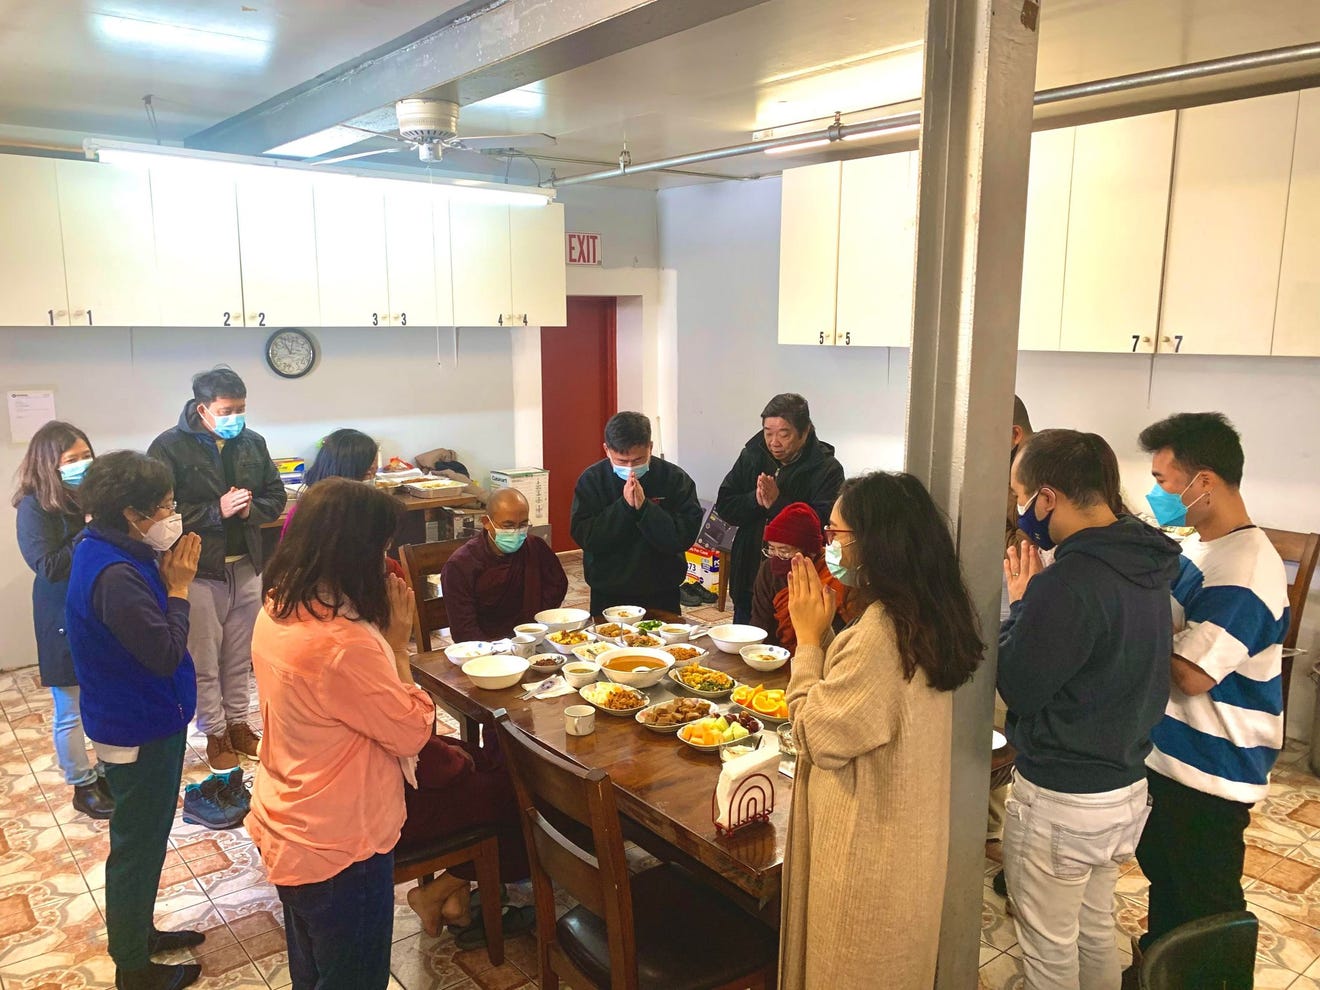 Một gia đình người châu Á quây quần bên nhau trong bữa cơm gia đình ngày Tết Nguyên Đán - Ảnh: Jaclyn/USA Today